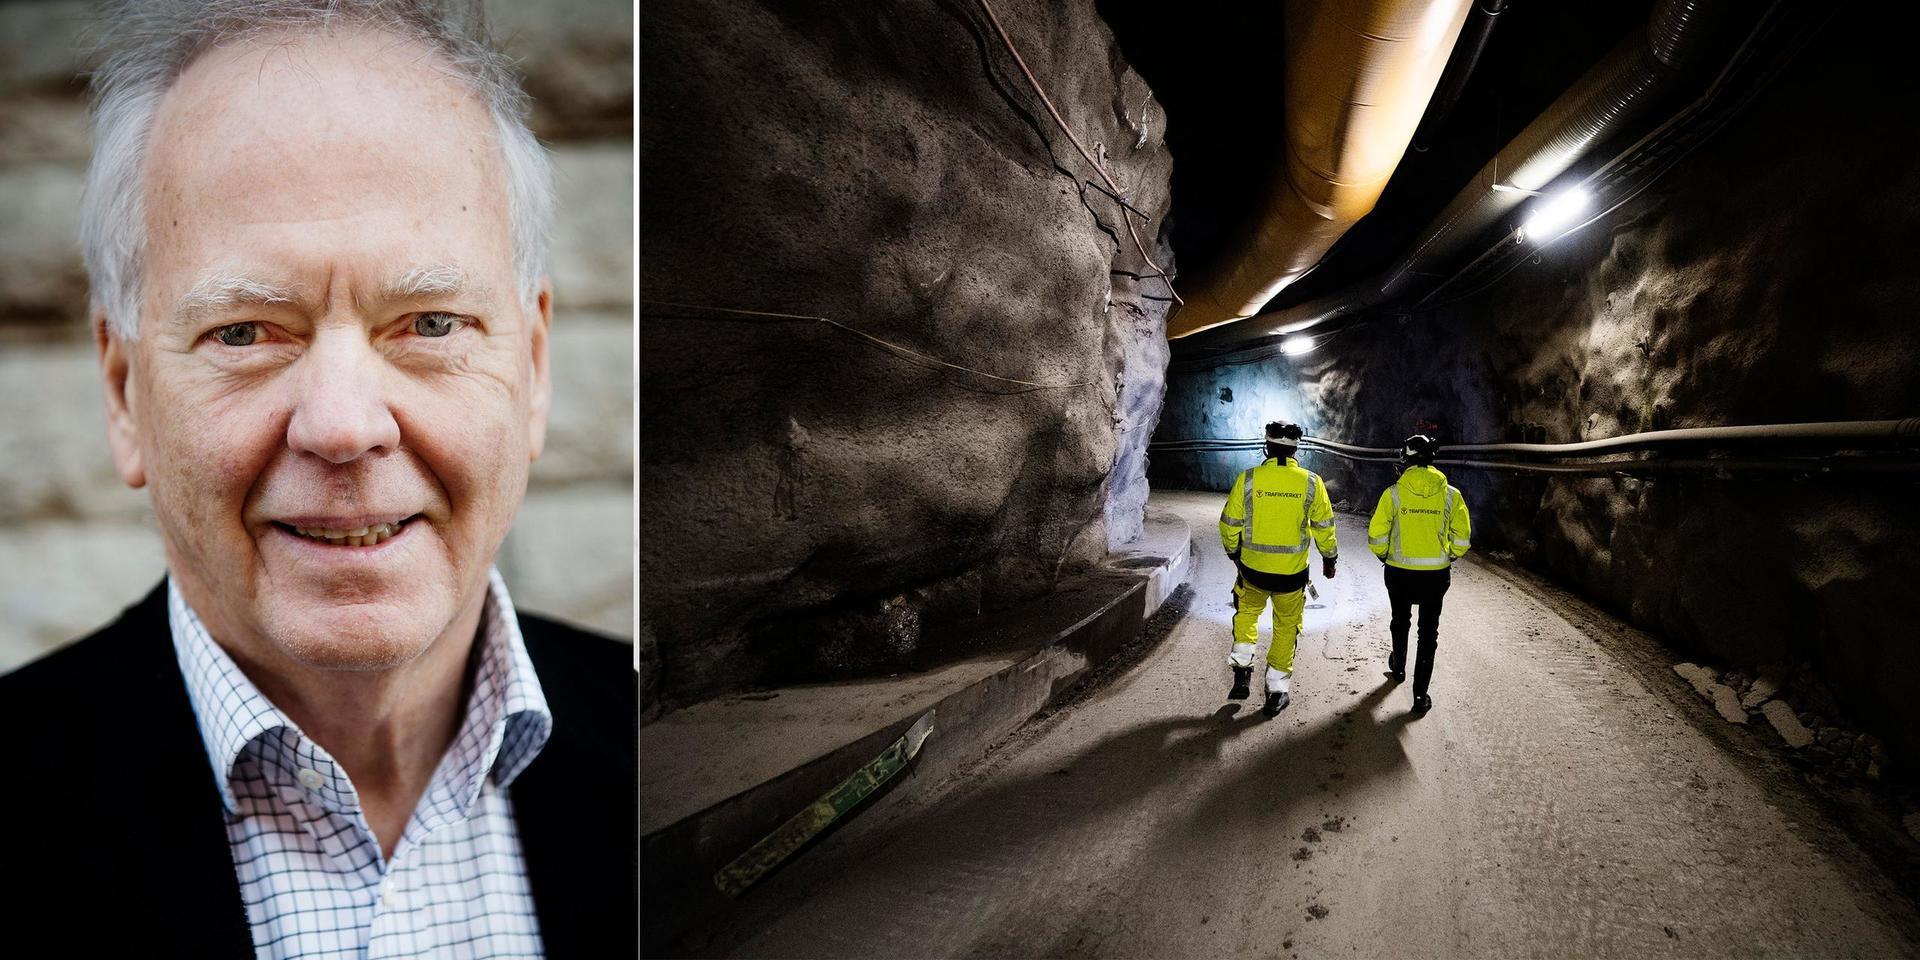 Tunnlarna som idag byggs för Västlänken borde i stället trafikeras av stadens spårvagnar, skriver debattörerna.